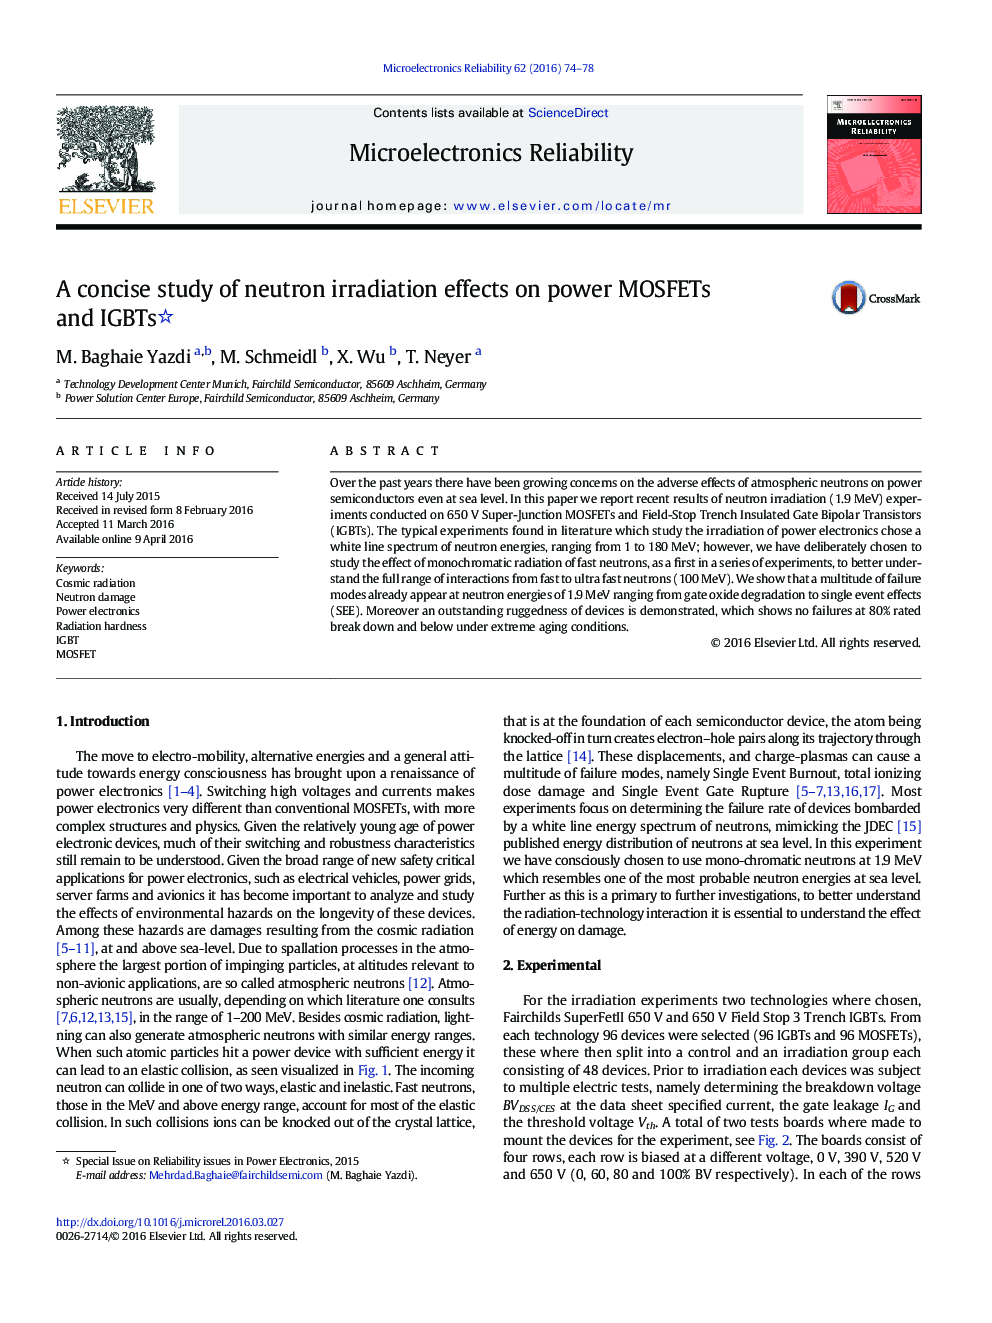 یک مطالعه مختصر در مورد اثرات تابش نوترون بر MOSFET ها و IGBT های توان